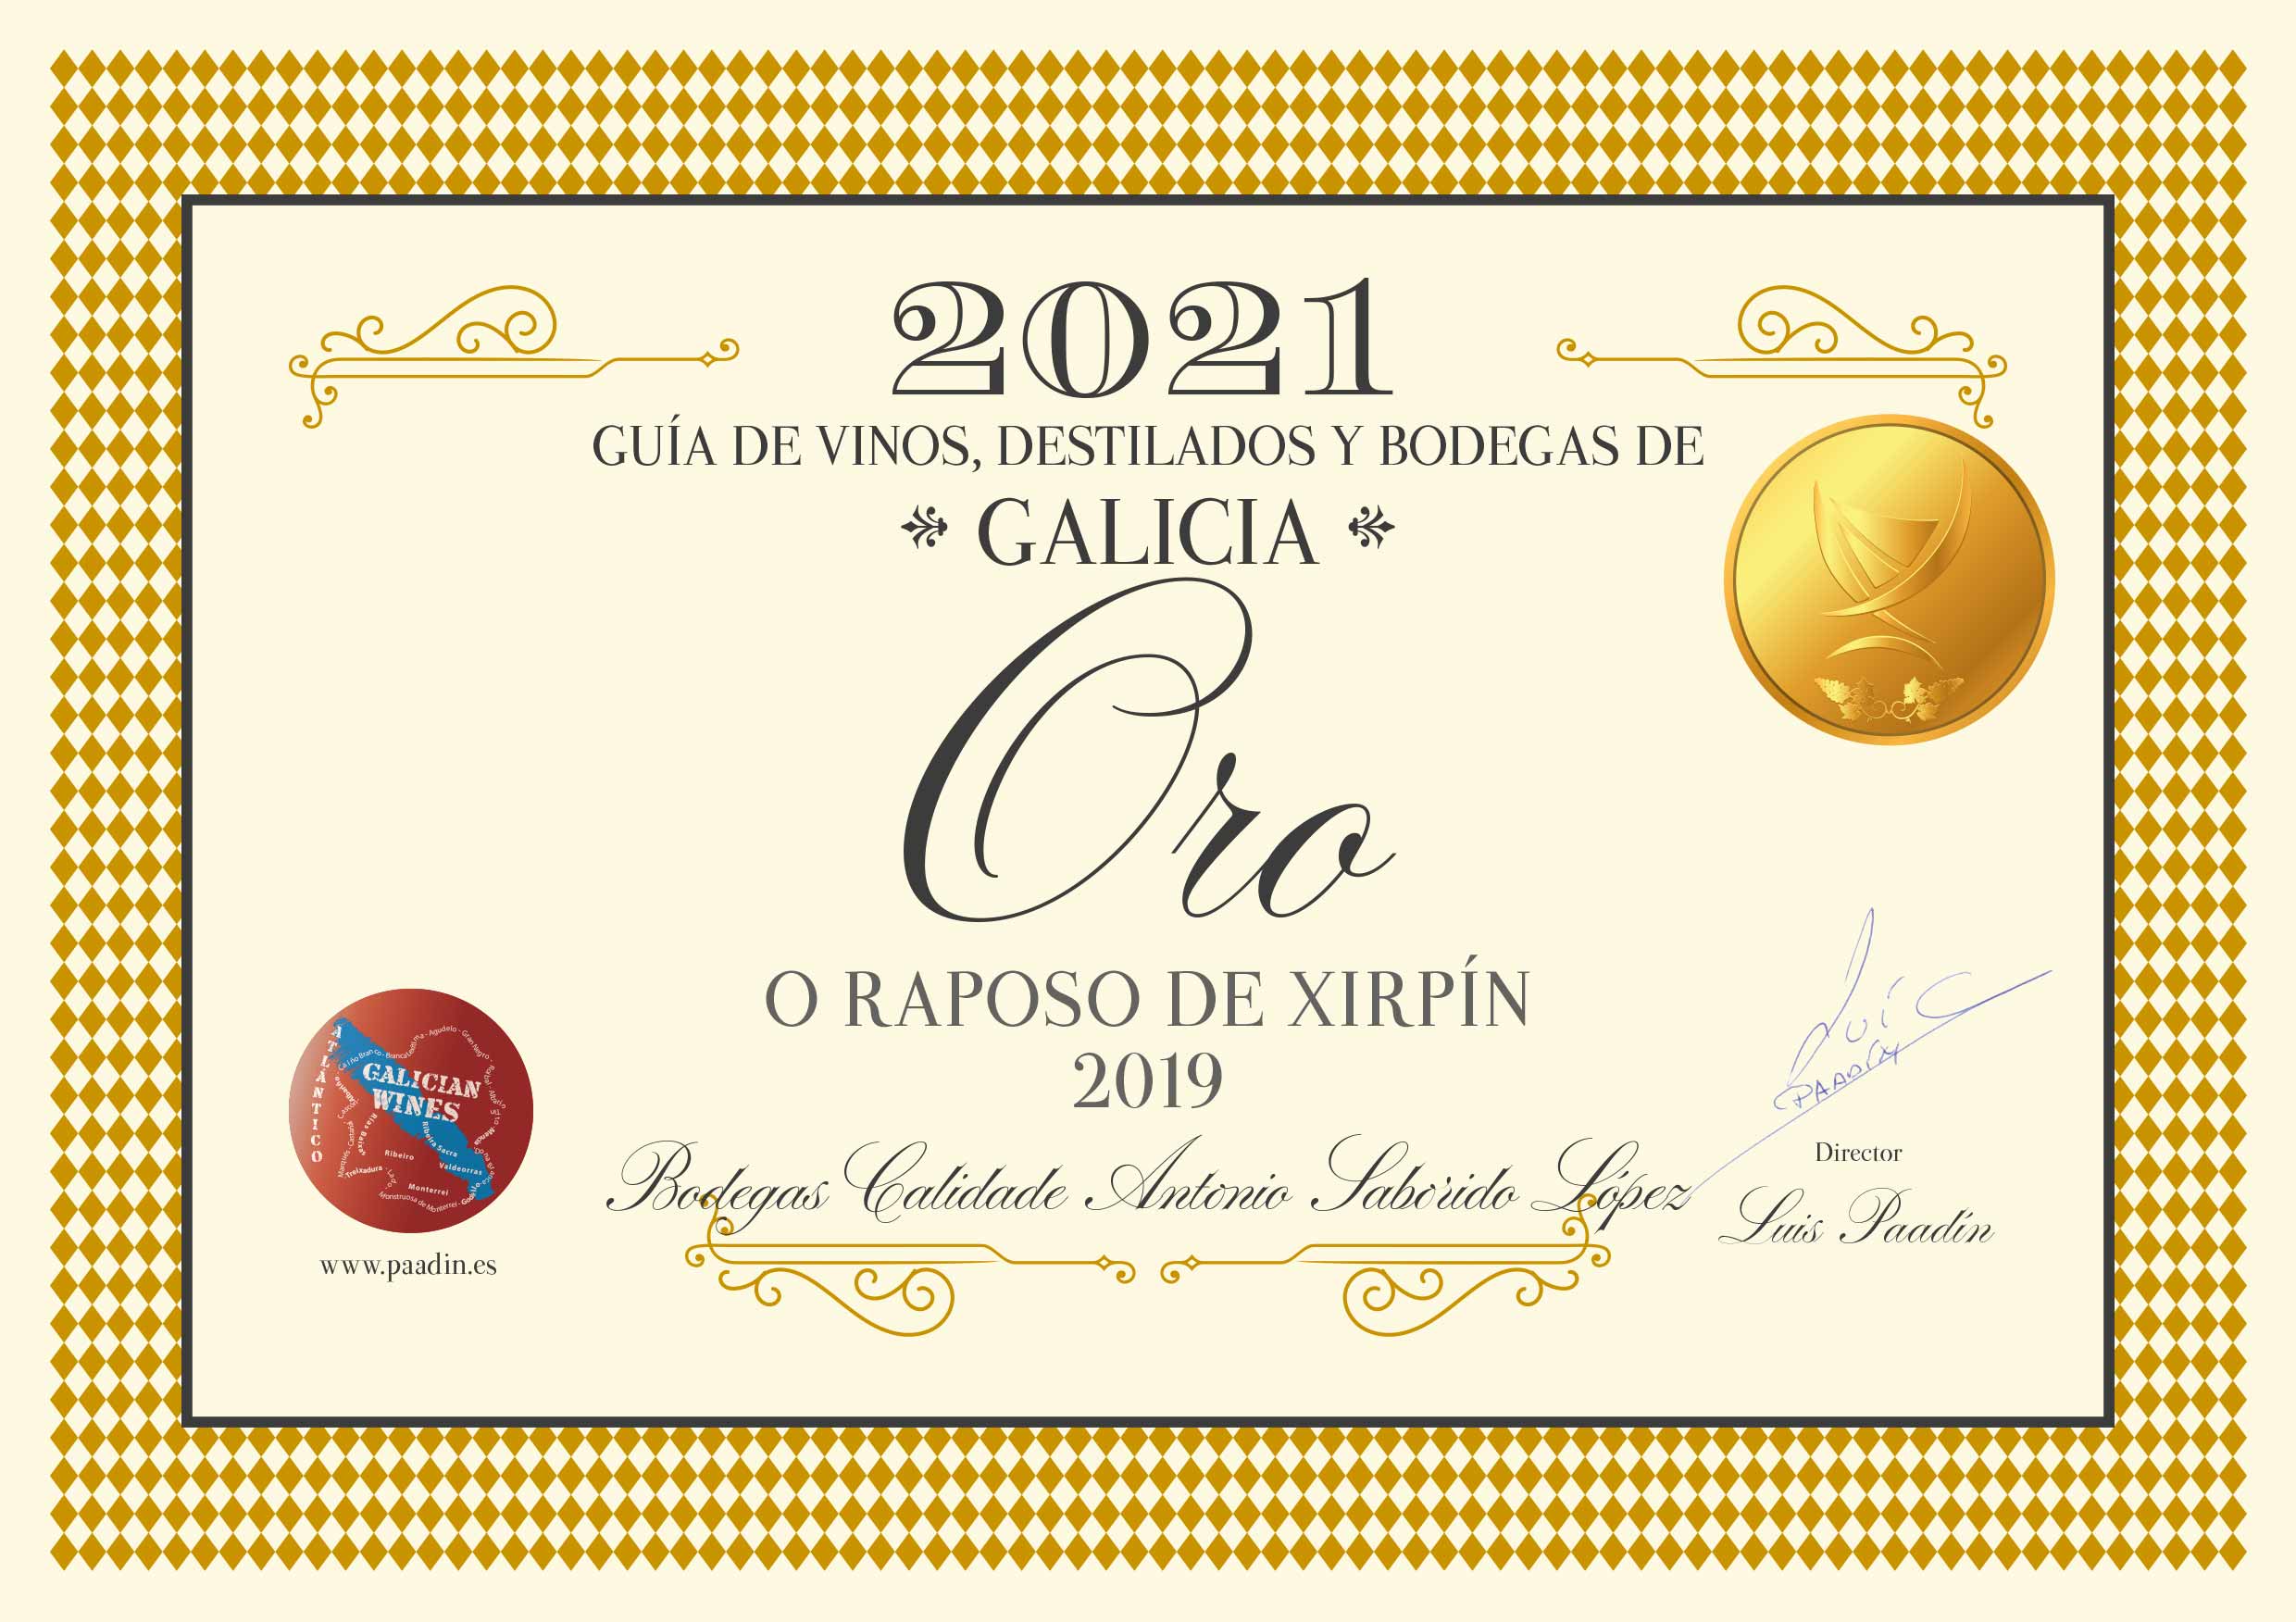 O Raposo de Xirpín 2019 - Medalla de Oro por la Guía de vinos, destilados y bodegas de Galicia